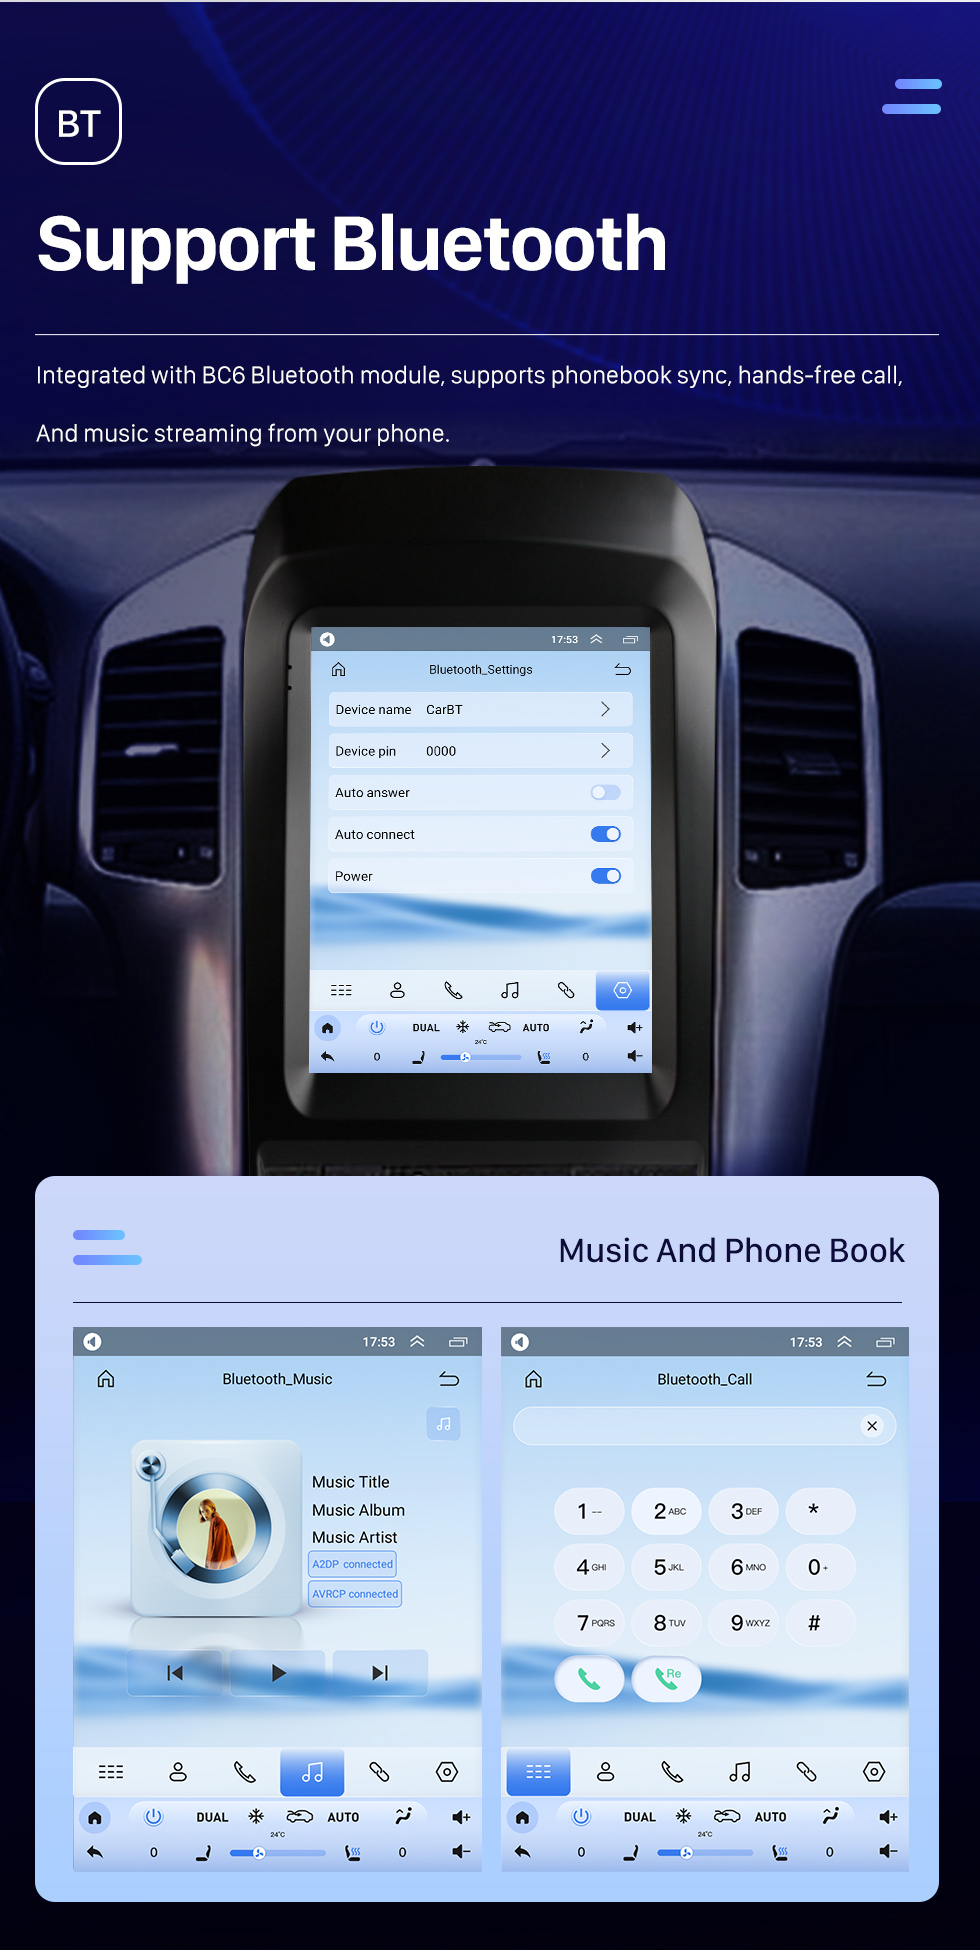 Seicane 9,7 pouces Android 10.0 Unité principale de navigation GPS pour 2006-2012 Chevy Chevrolet Captiva Radio USB avec prise en charge USB Bluetooth WIFI DVR OBD2 TPMS Commande au volant